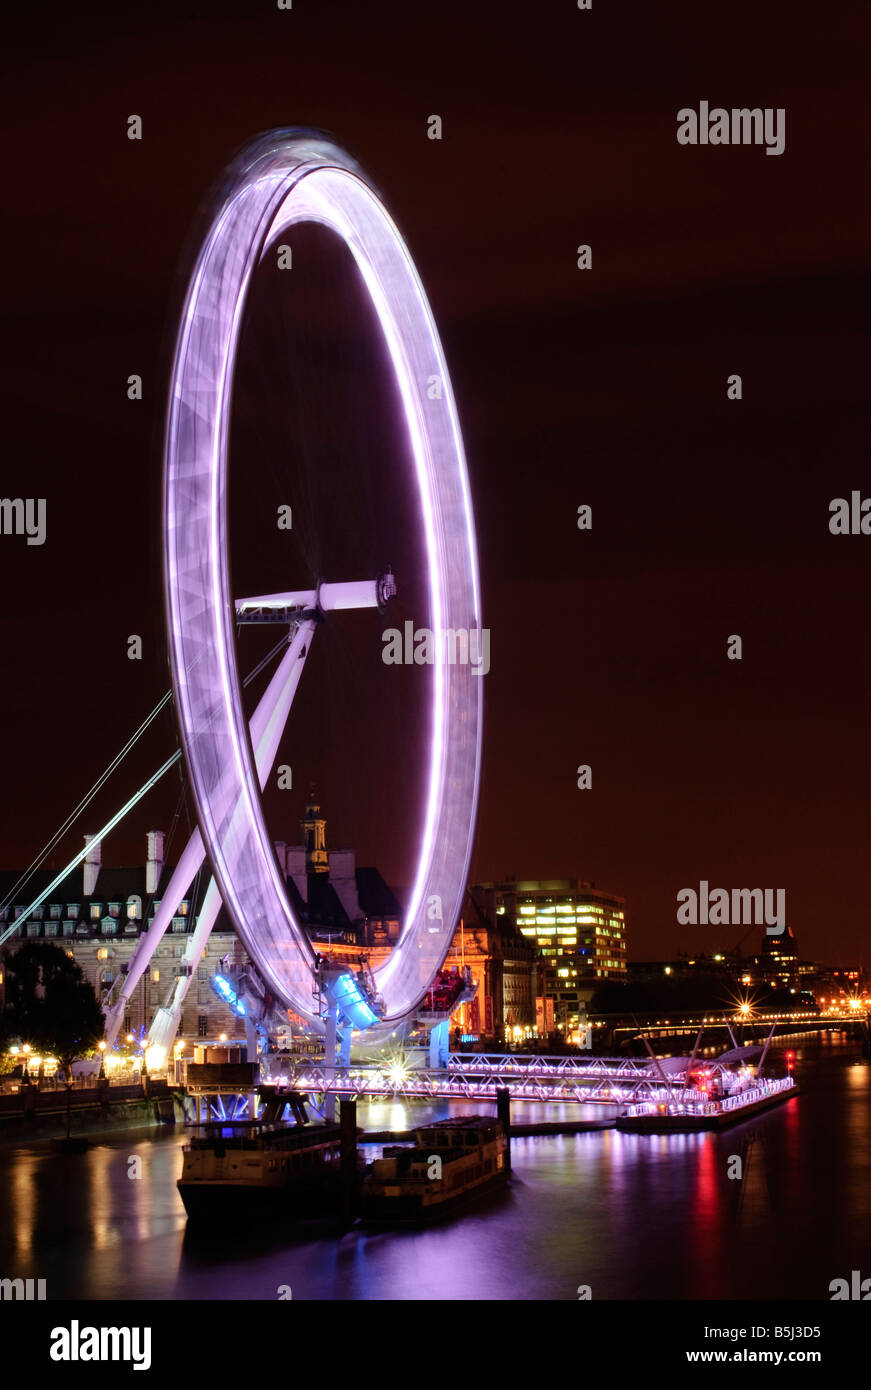 LONDRES, Royaume-Uni — la roue du millénaire, également connue sous le nom de London Eye, est un point de repère moderne sur la rive sud de la Tamise. Cette célèbre grande roue offre une vue à couper le souffle sur les gratte-ciel de Londres et attire chaque année des millions de visiteurs, ce qui en fait une attraction populaire dans la ville. Banque D'Images